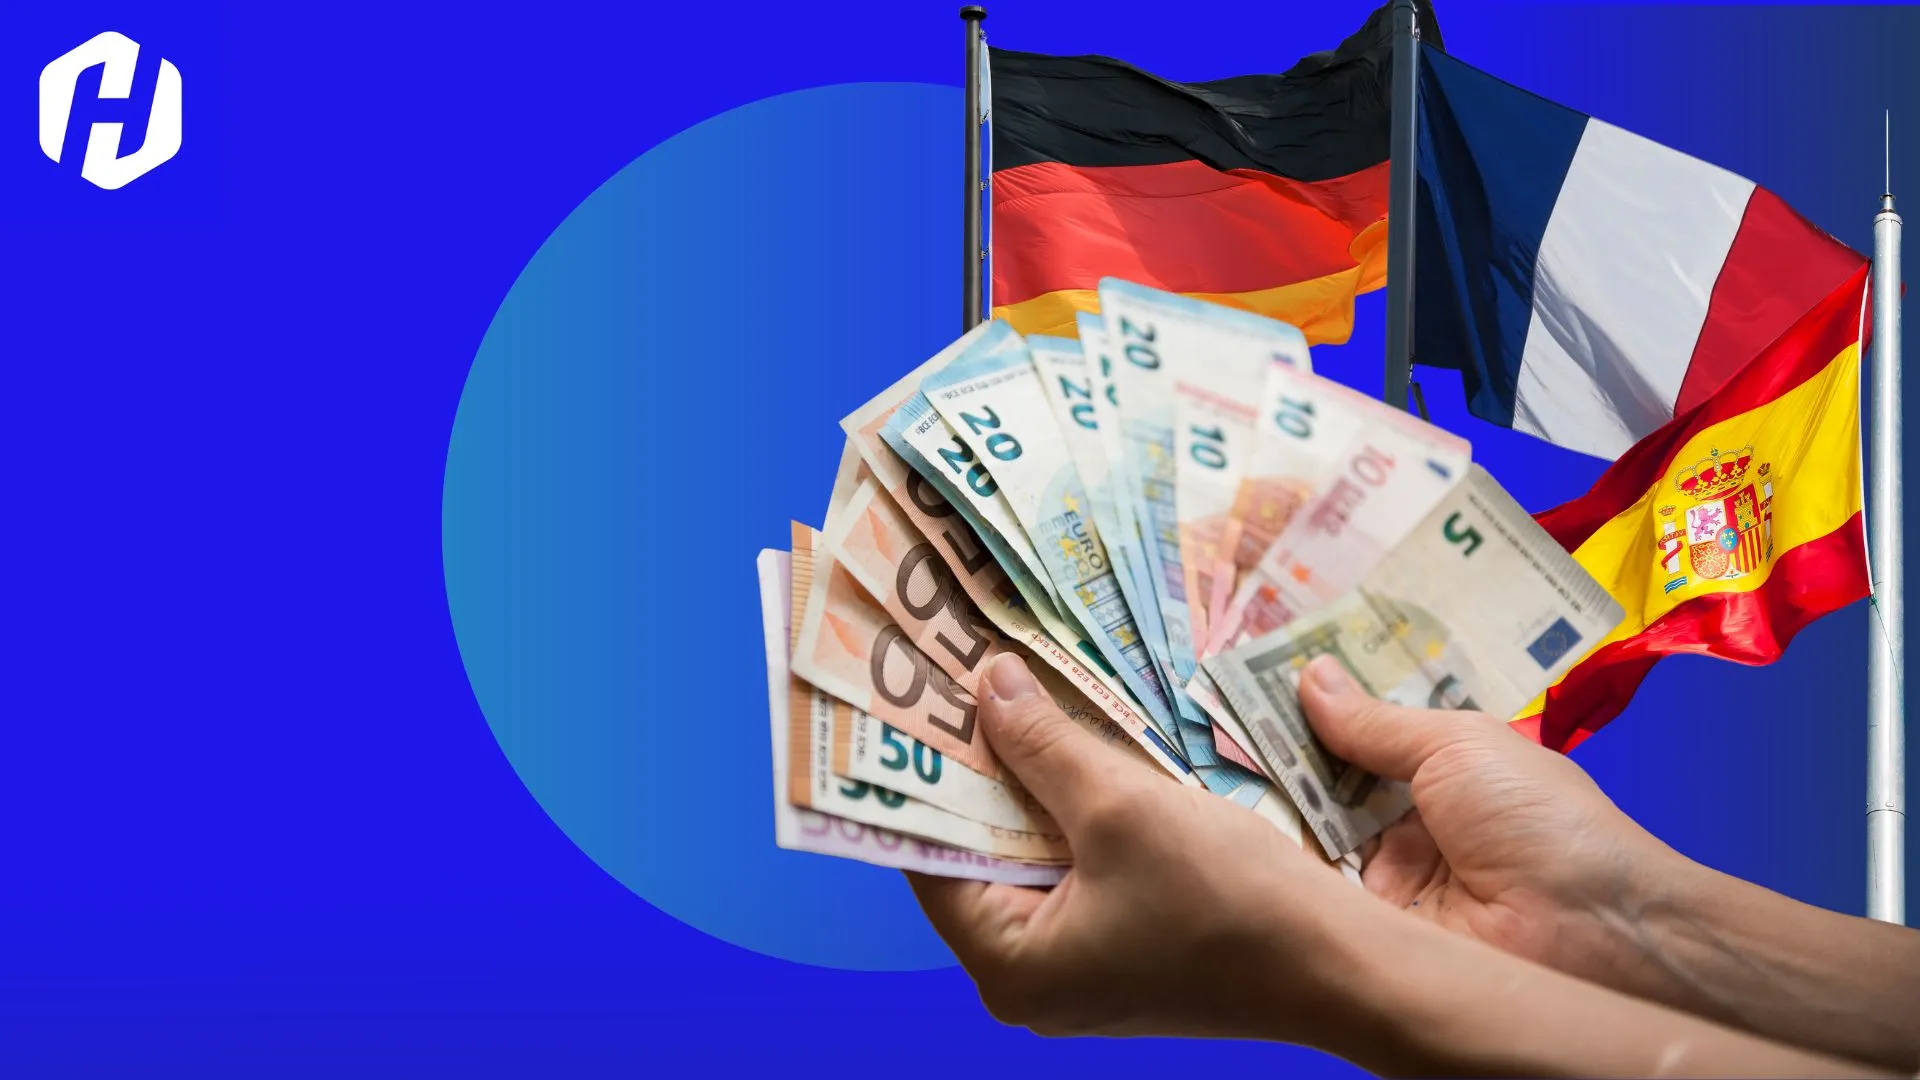 Memahami Pasangan Mata Uang EUR/CHF dalam Forex